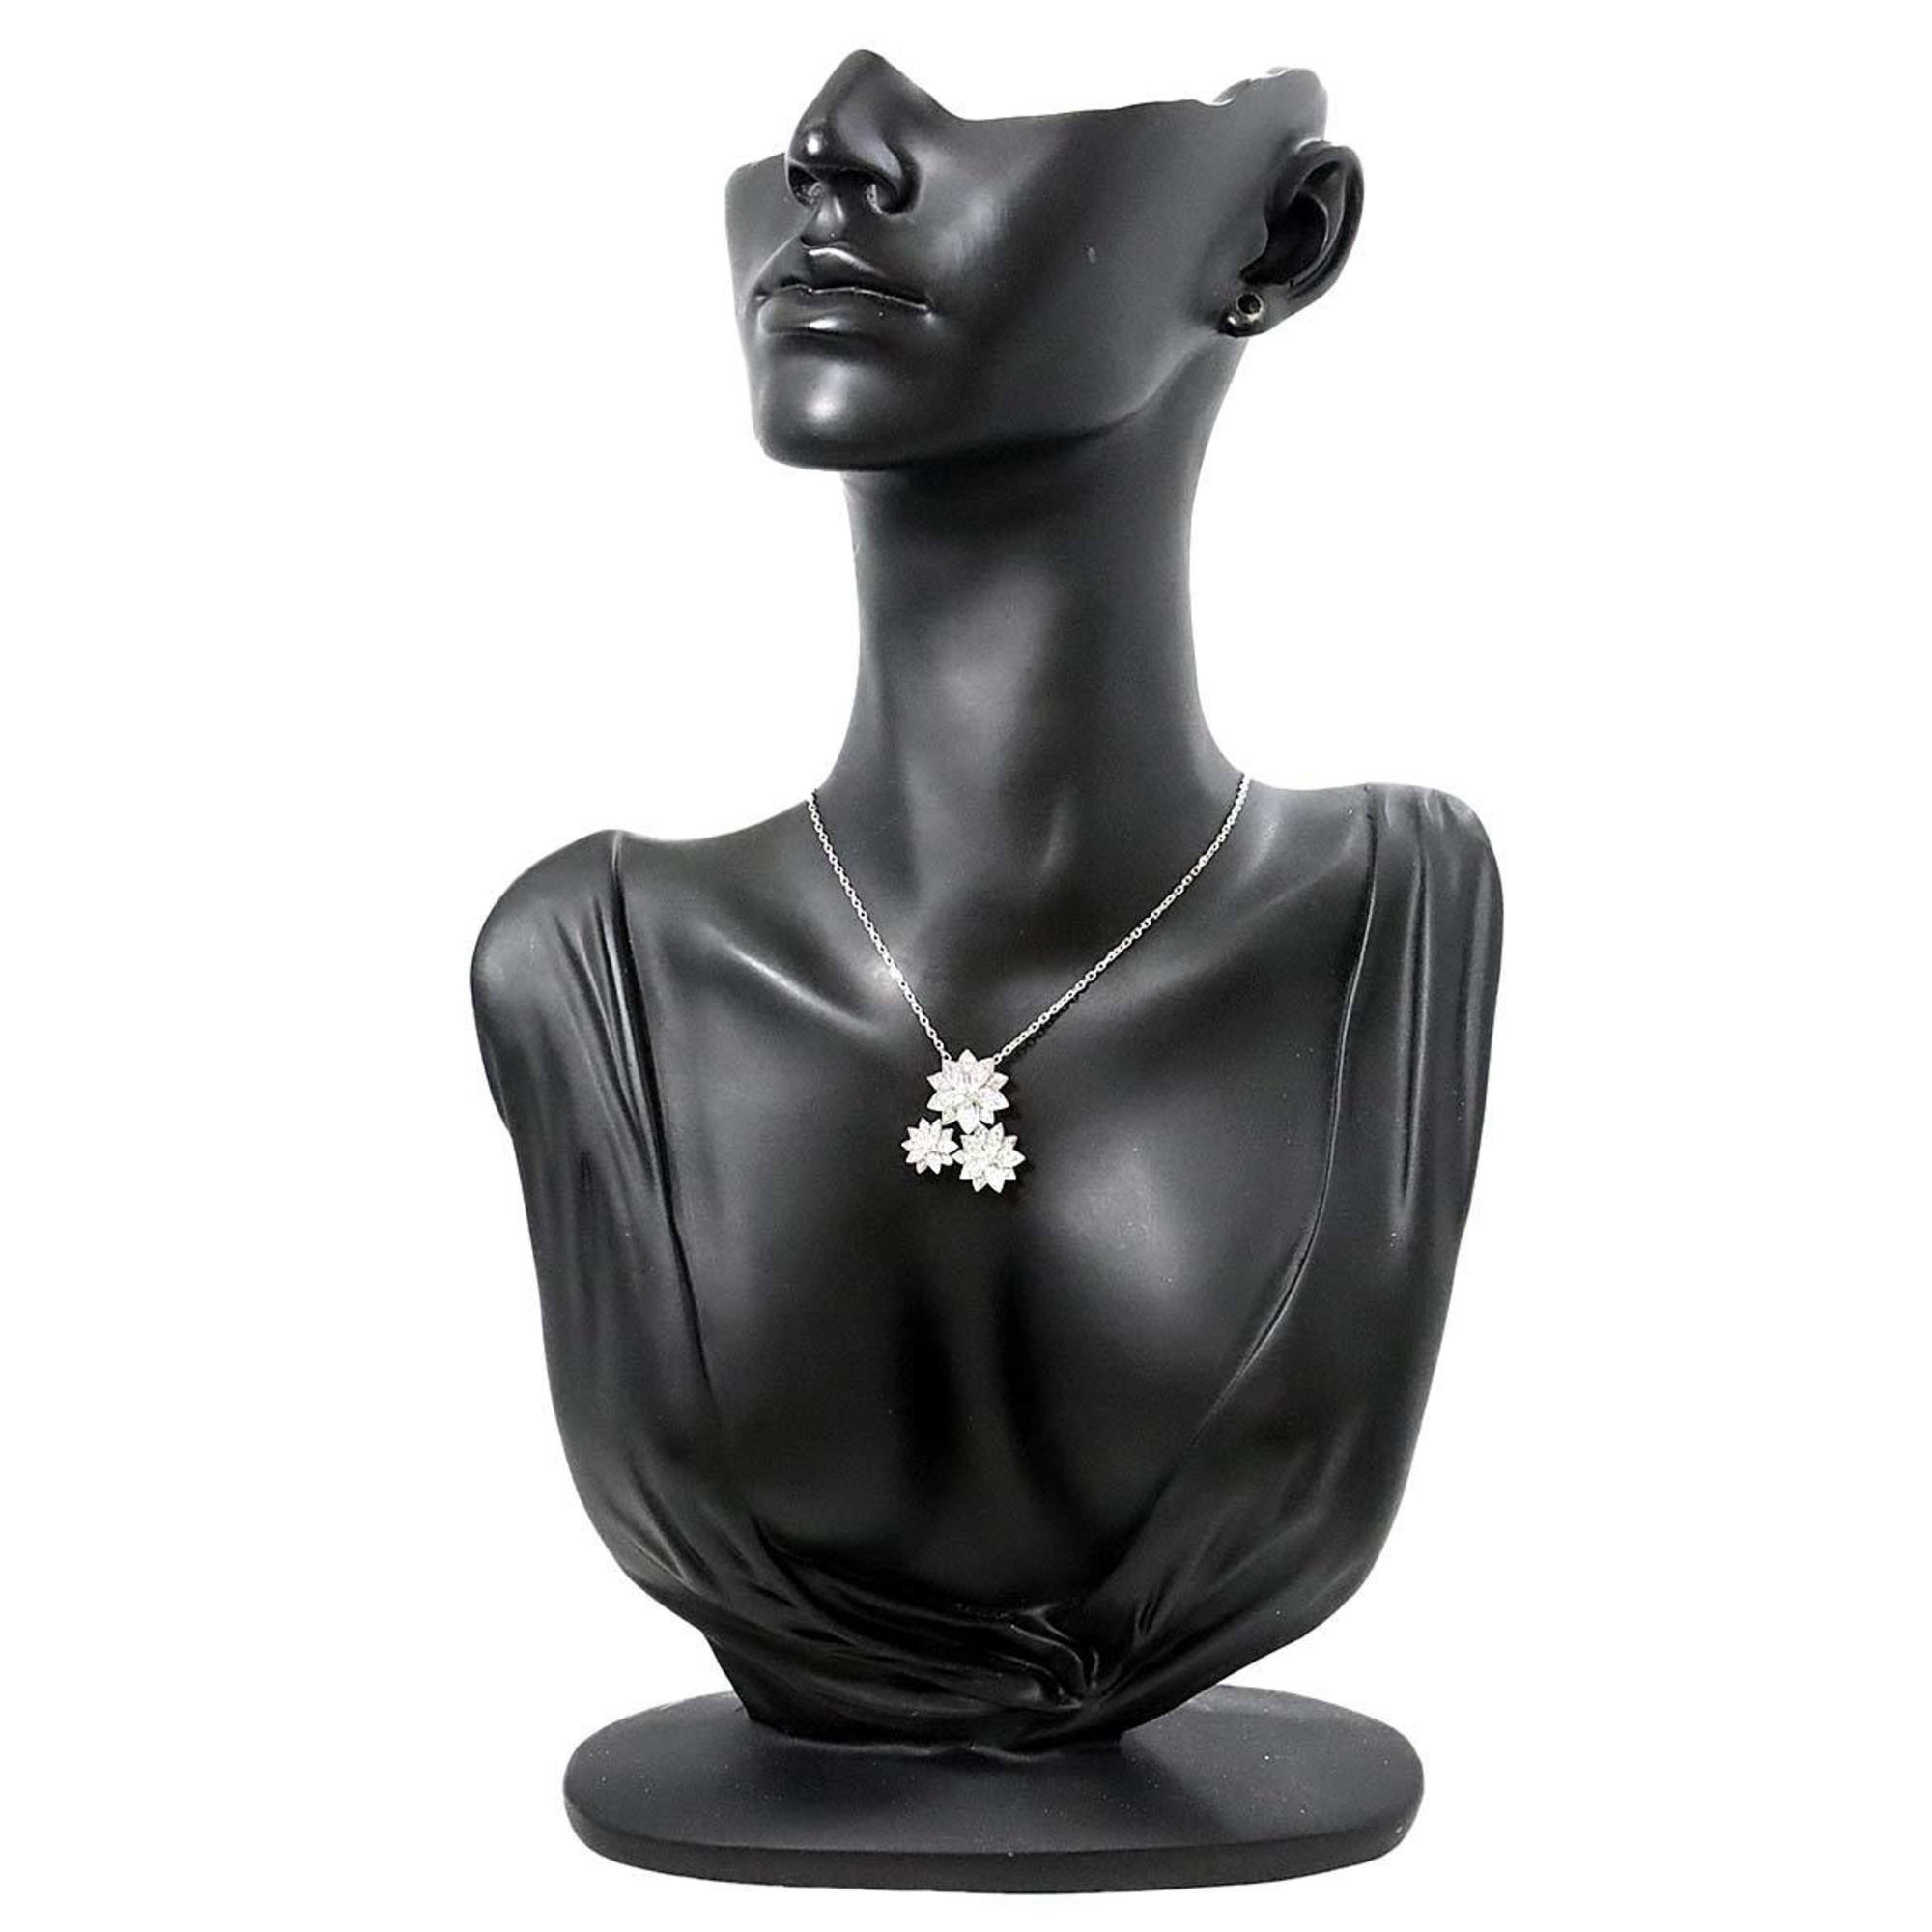 Van Cleef & Arpels Lotus 3 Flower Diamond Necklace 42cm K18 WG 750